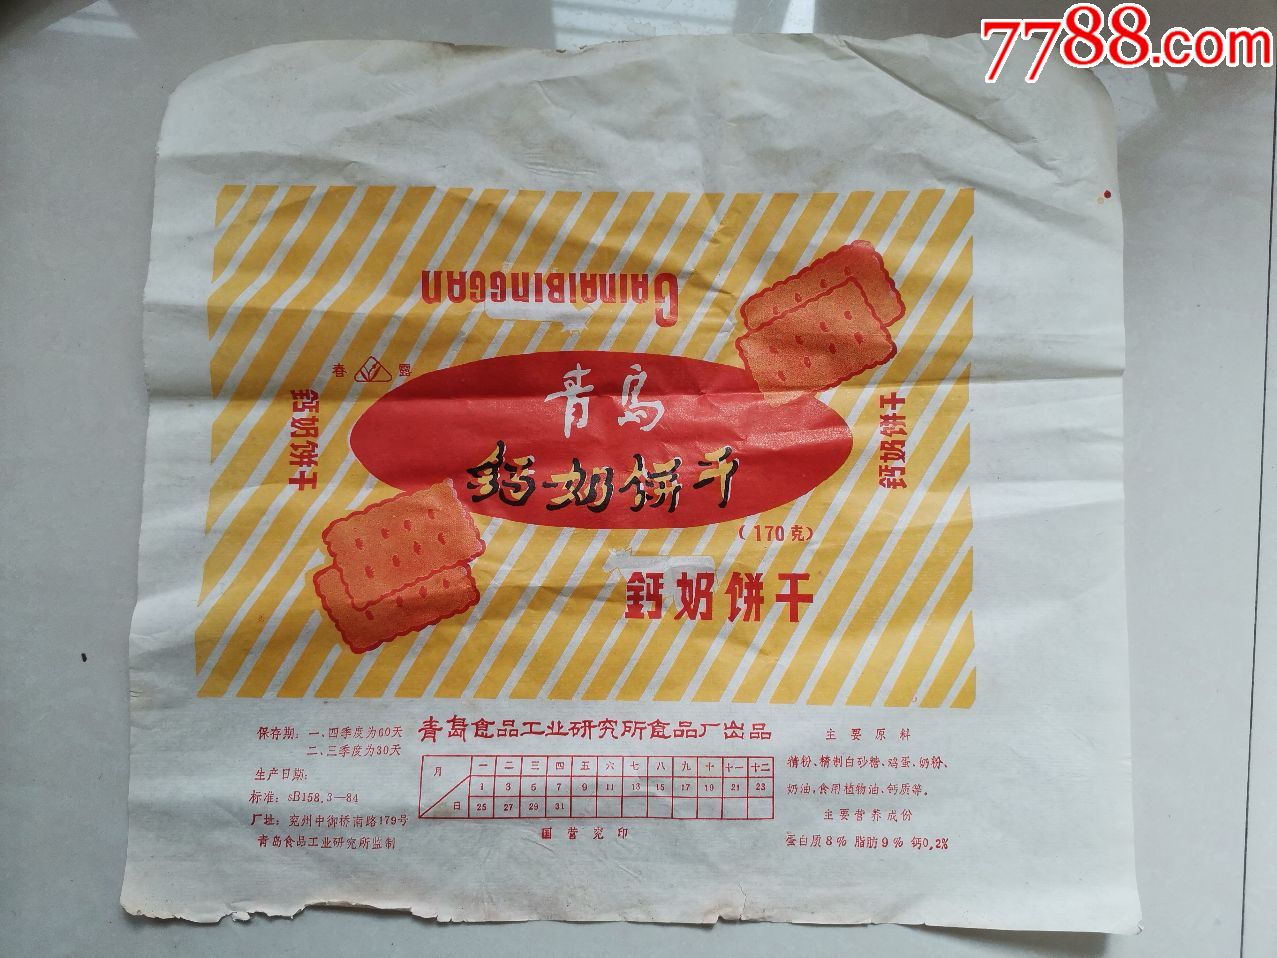 春露牌青岛钙奶饼干包装纸(青岛食品工业研究所食品厂出品,兖州生产)